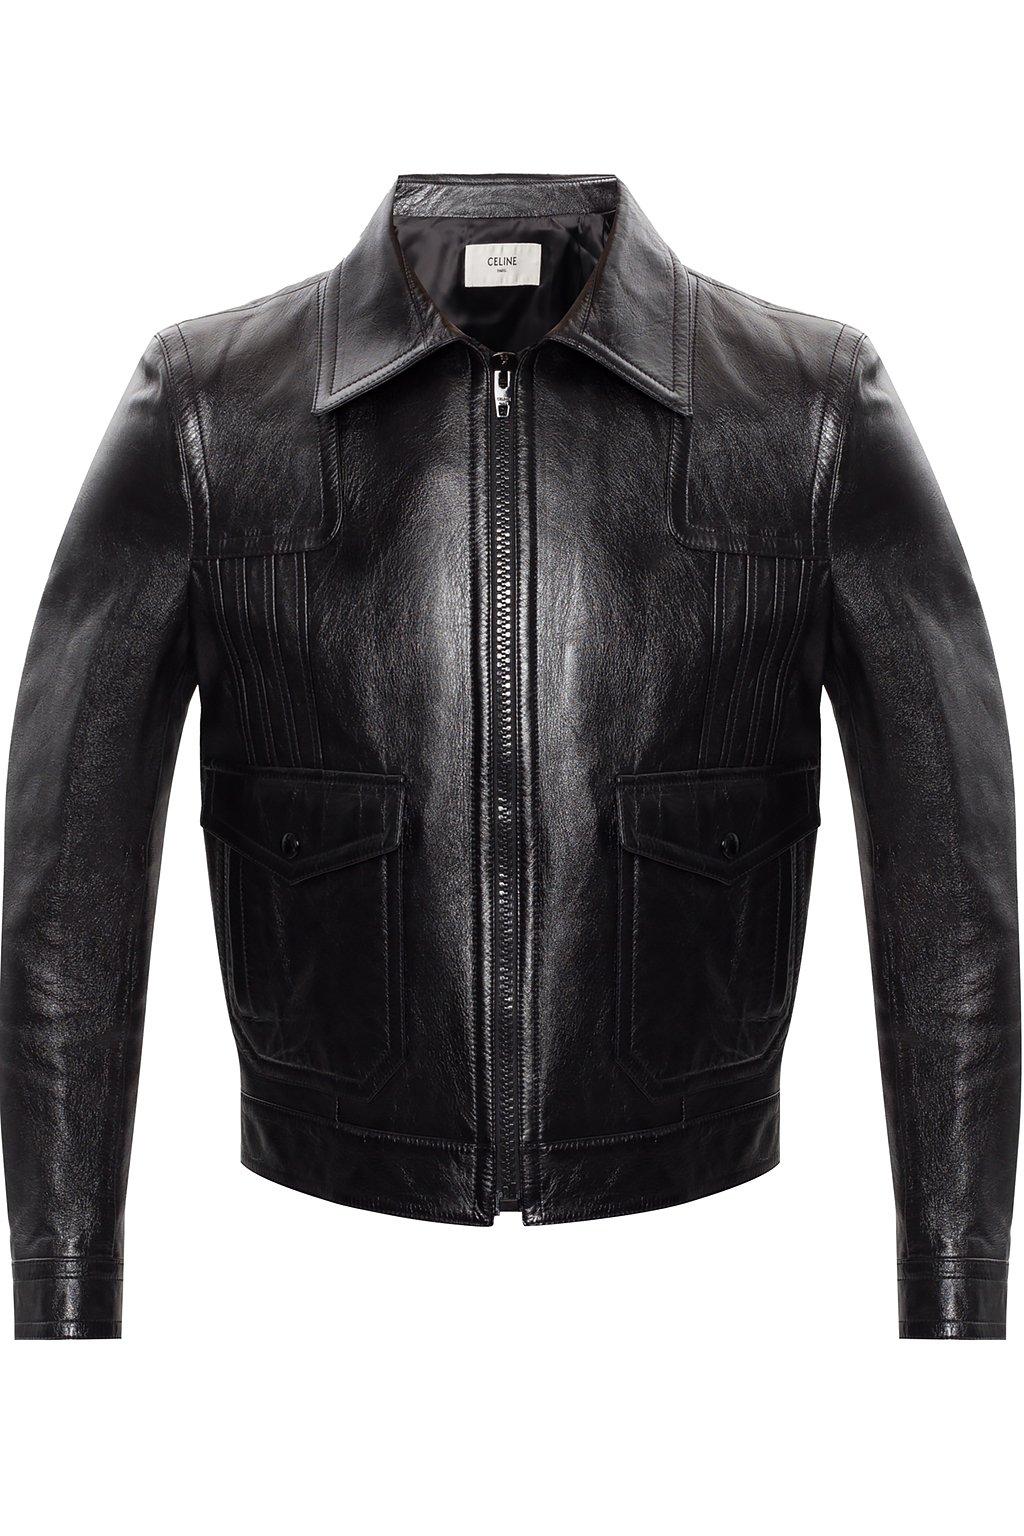 Celine Leather Biker Jacket | lupon.gov.ph